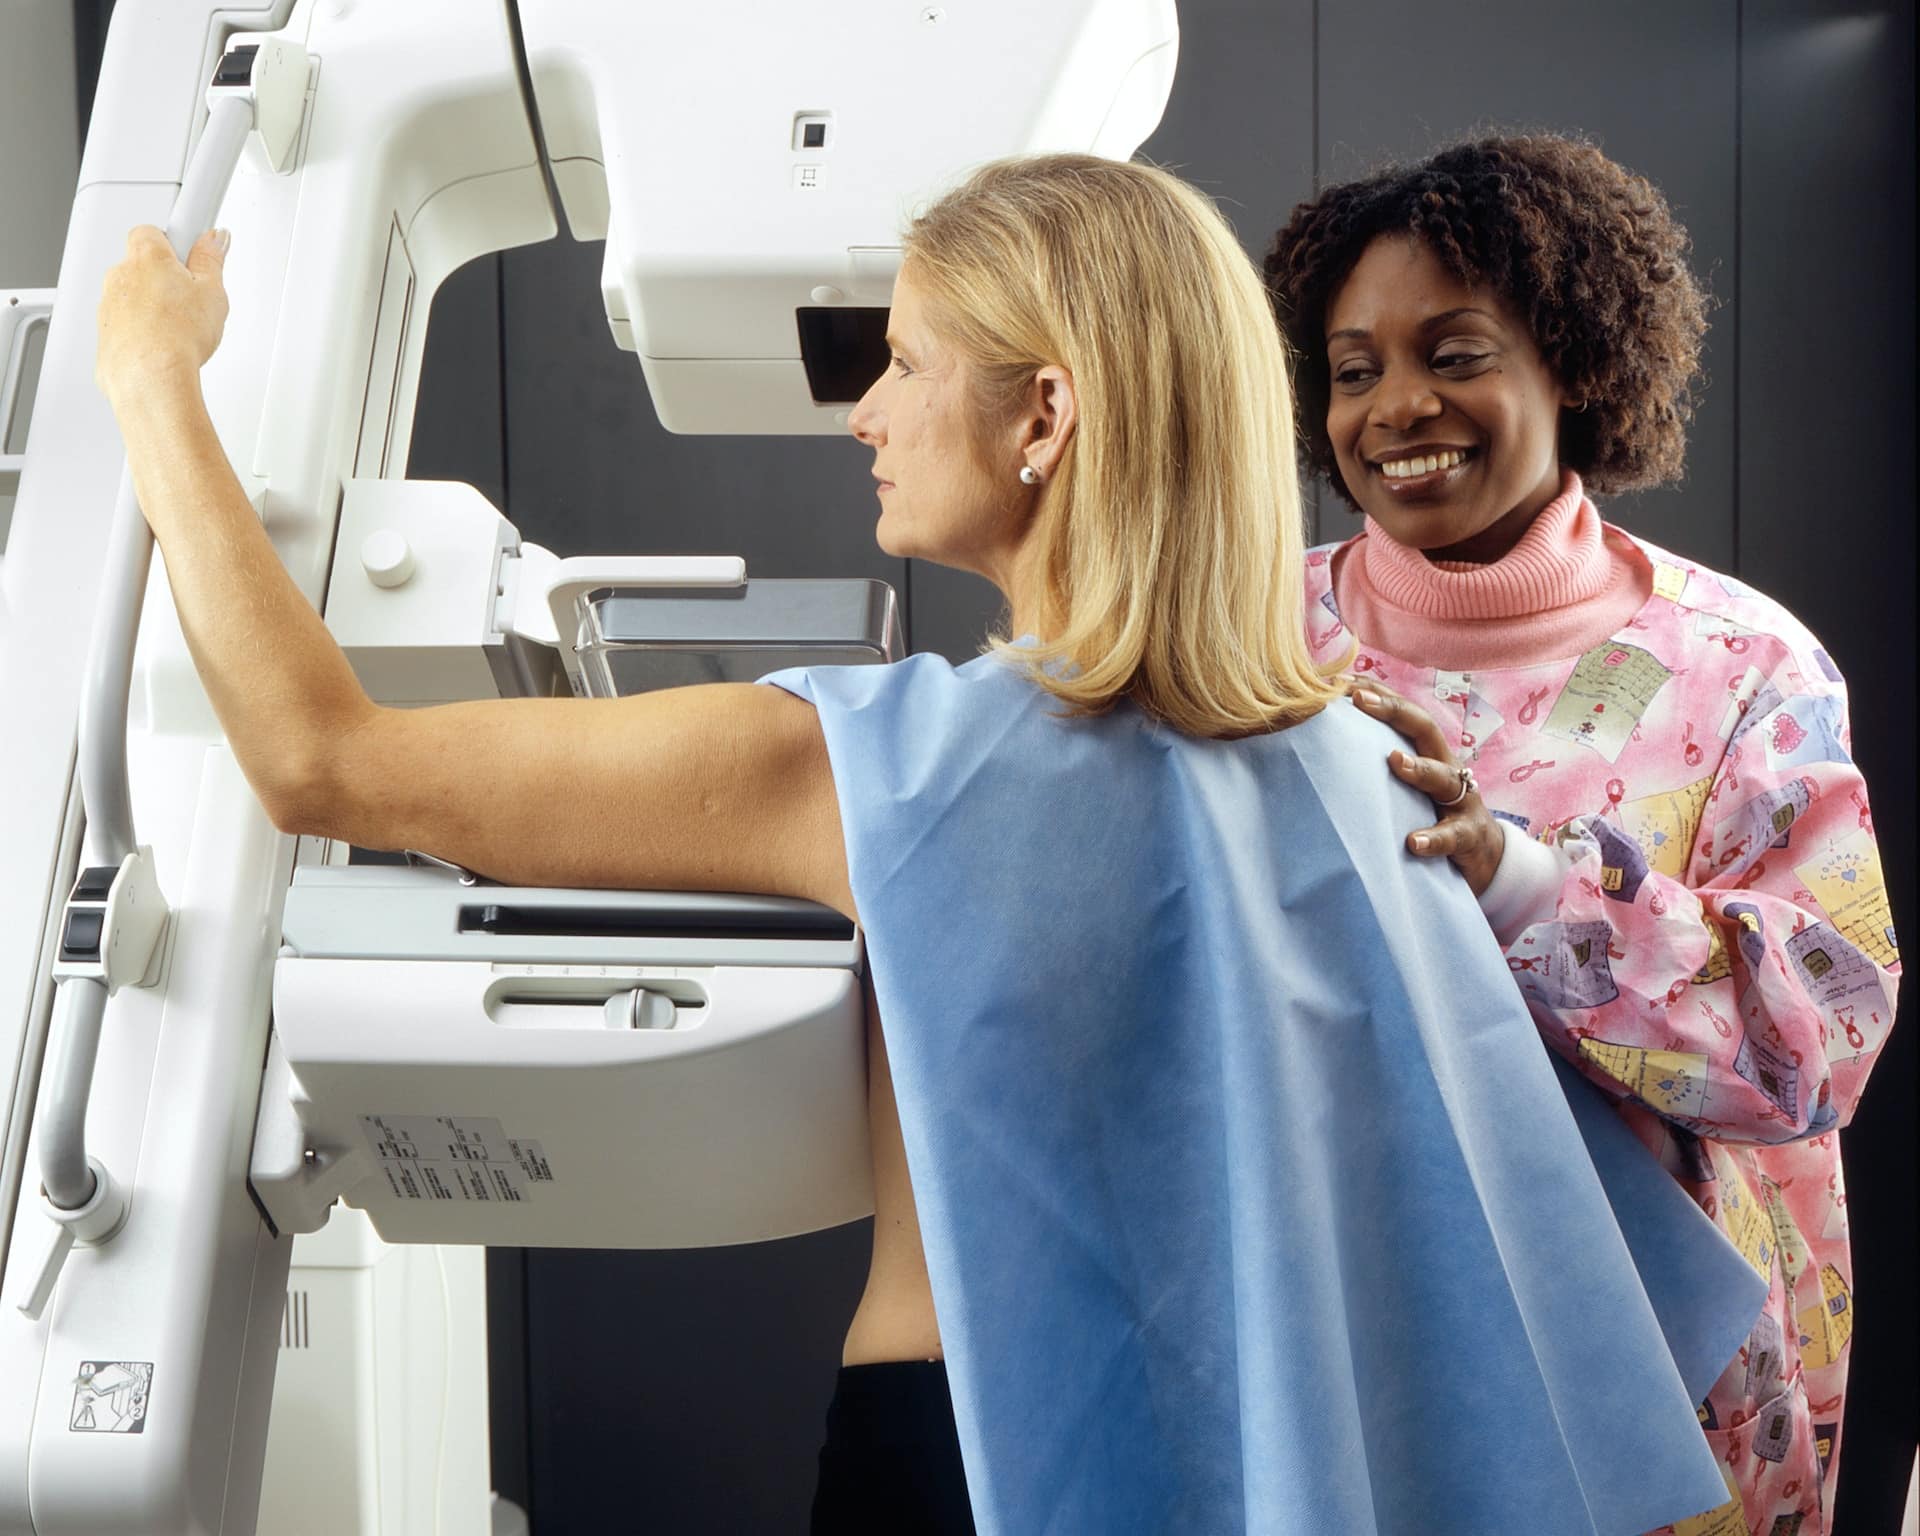 Procedimiento de mamografía en midiagnostico.